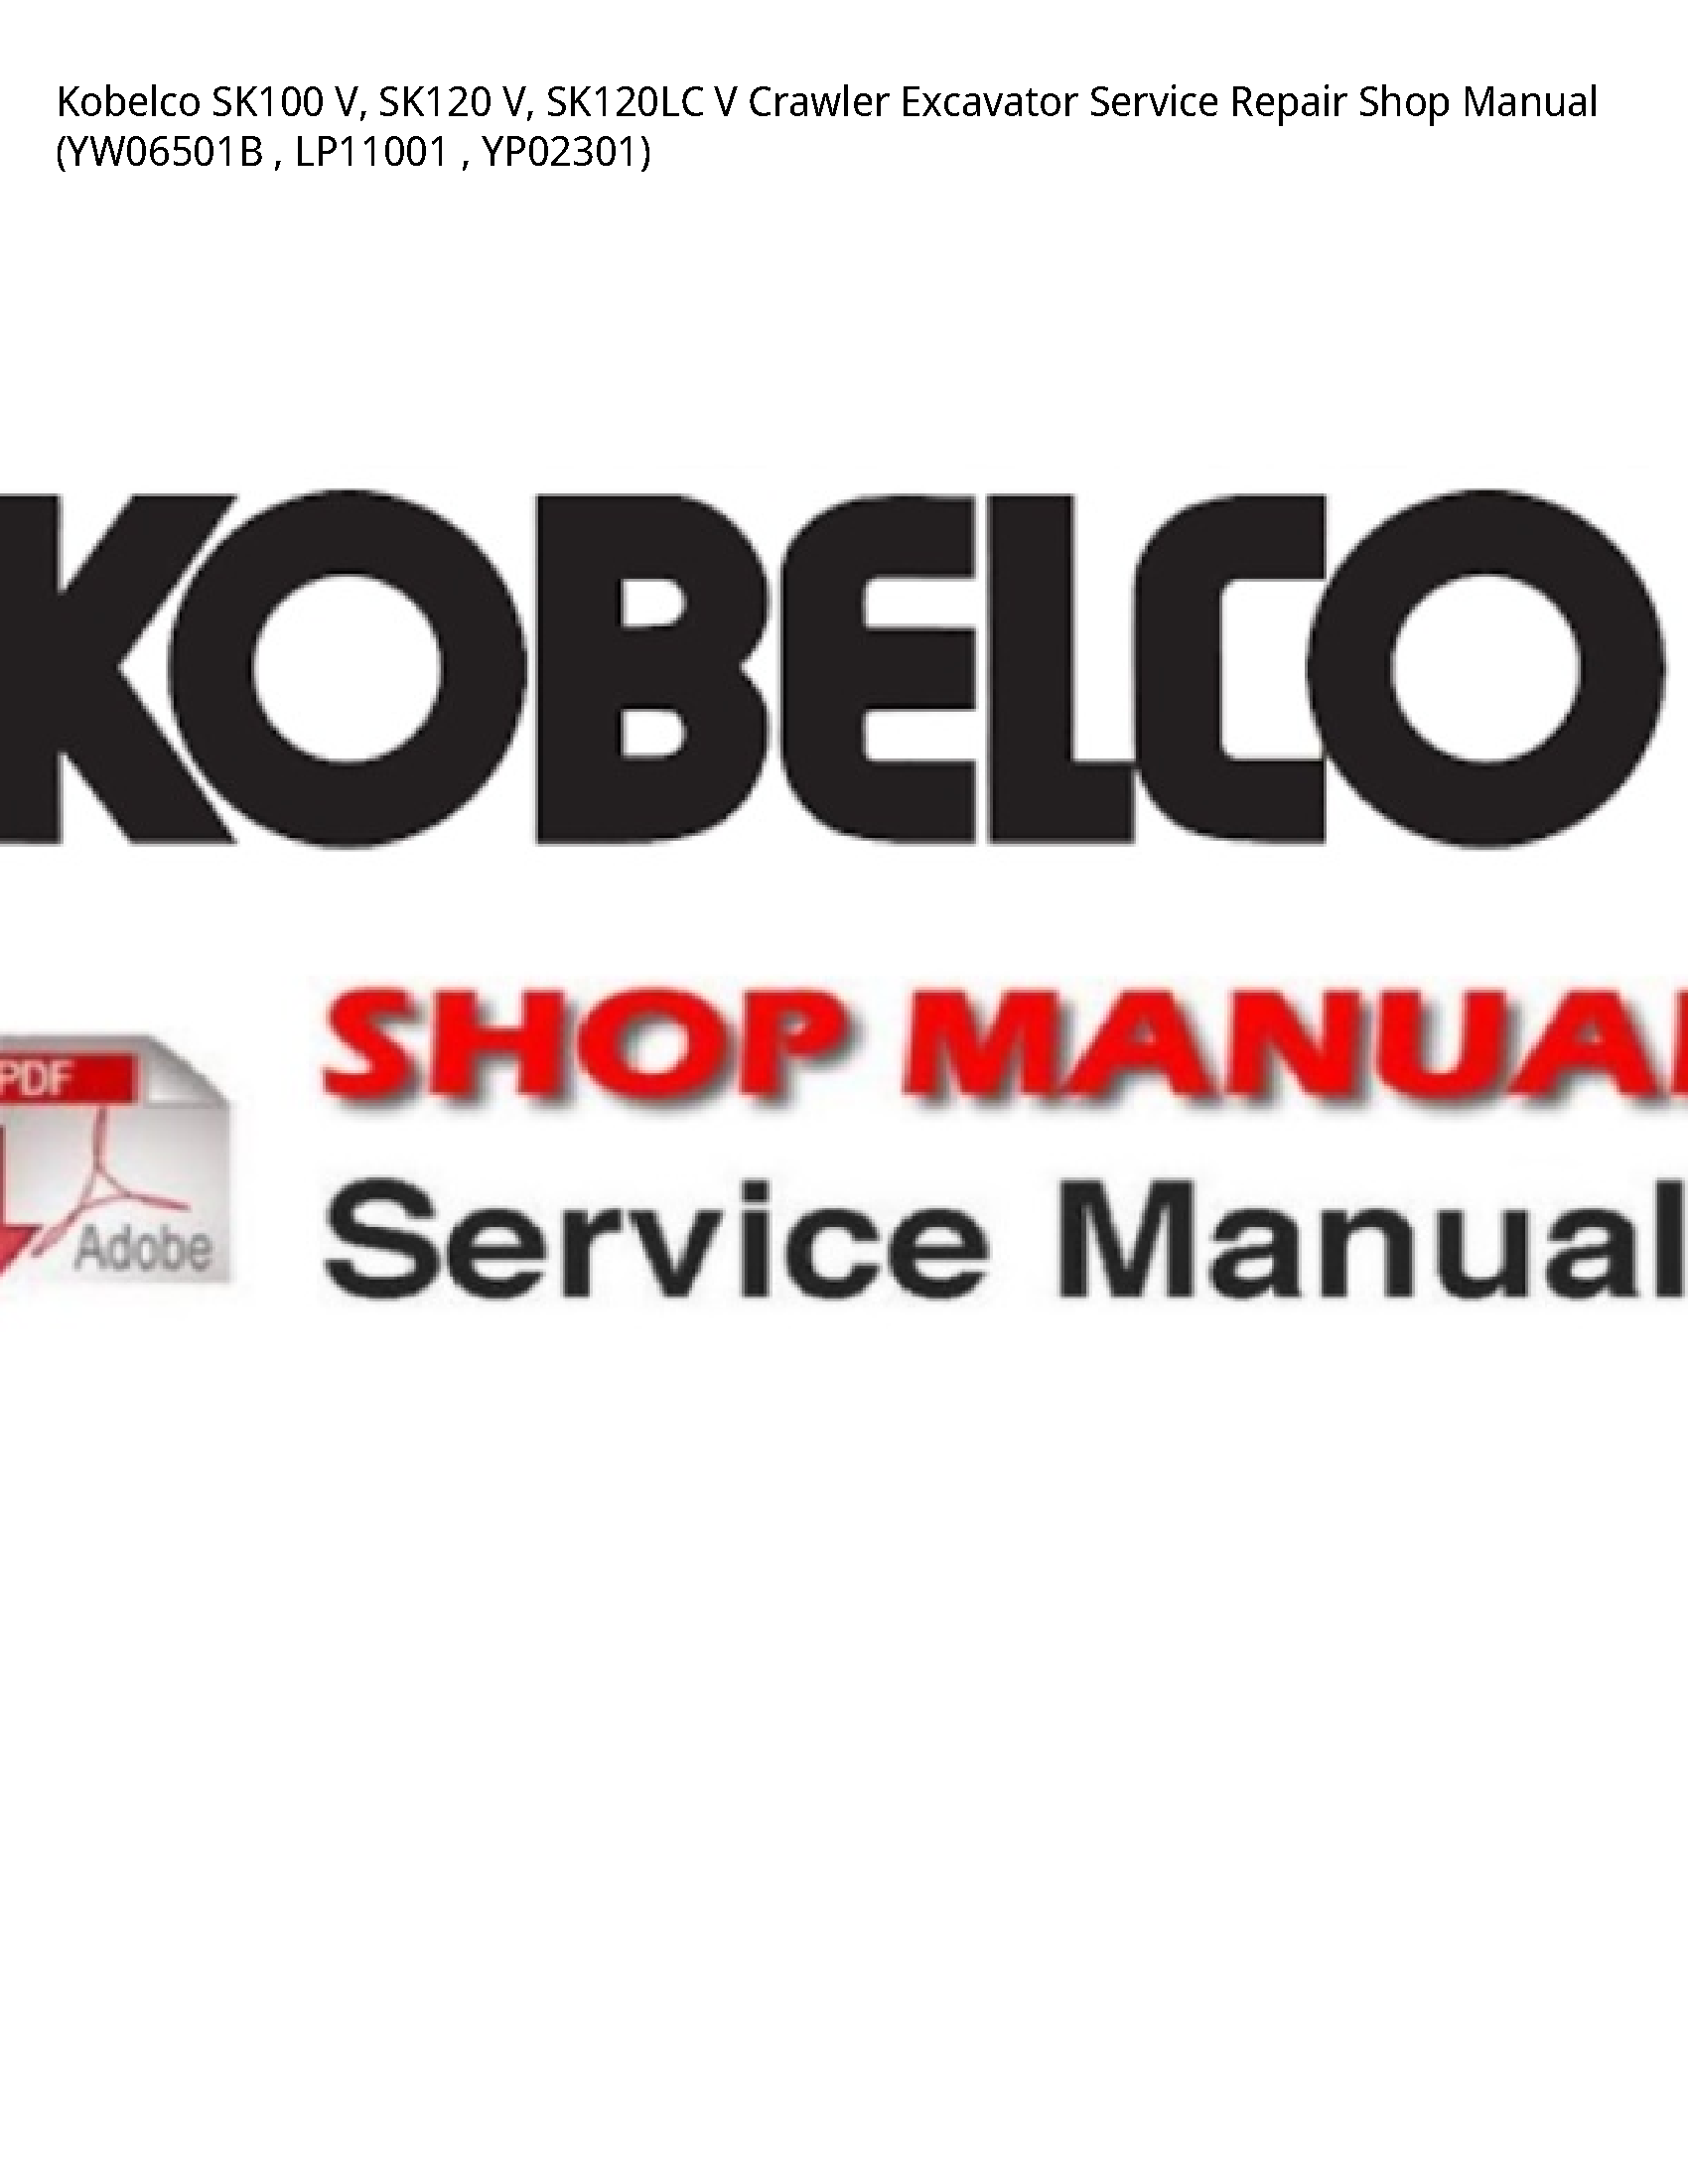 Kobelco SK100 V manual